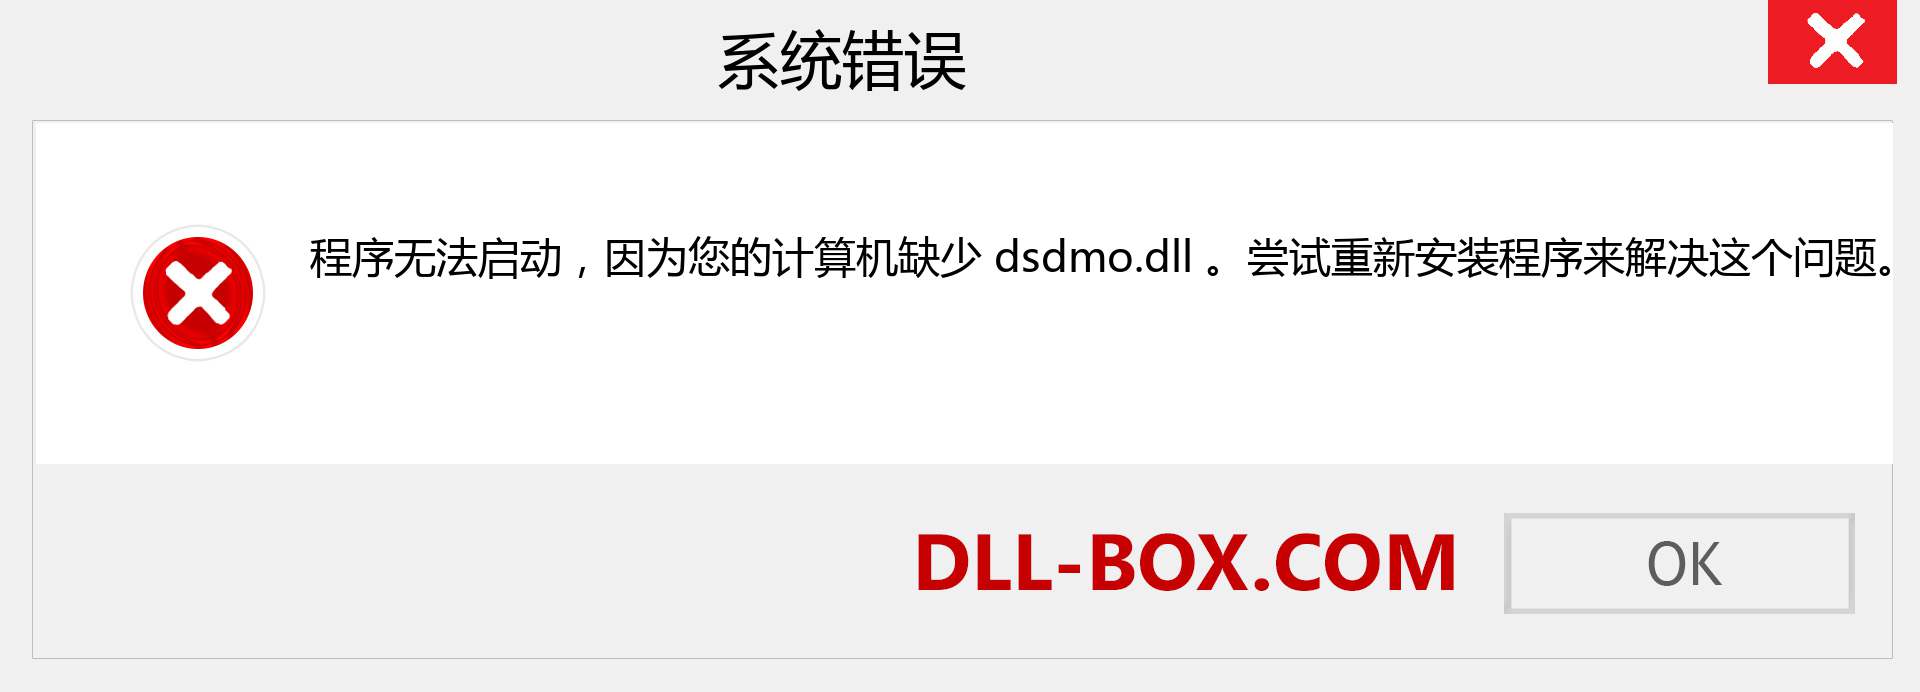 dsdmo.dll 文件丢失？。 适用于 Windows 7、8、10 的下载 - 修复 Windows、照片、图像上的 dsdmo dll 丢失错误